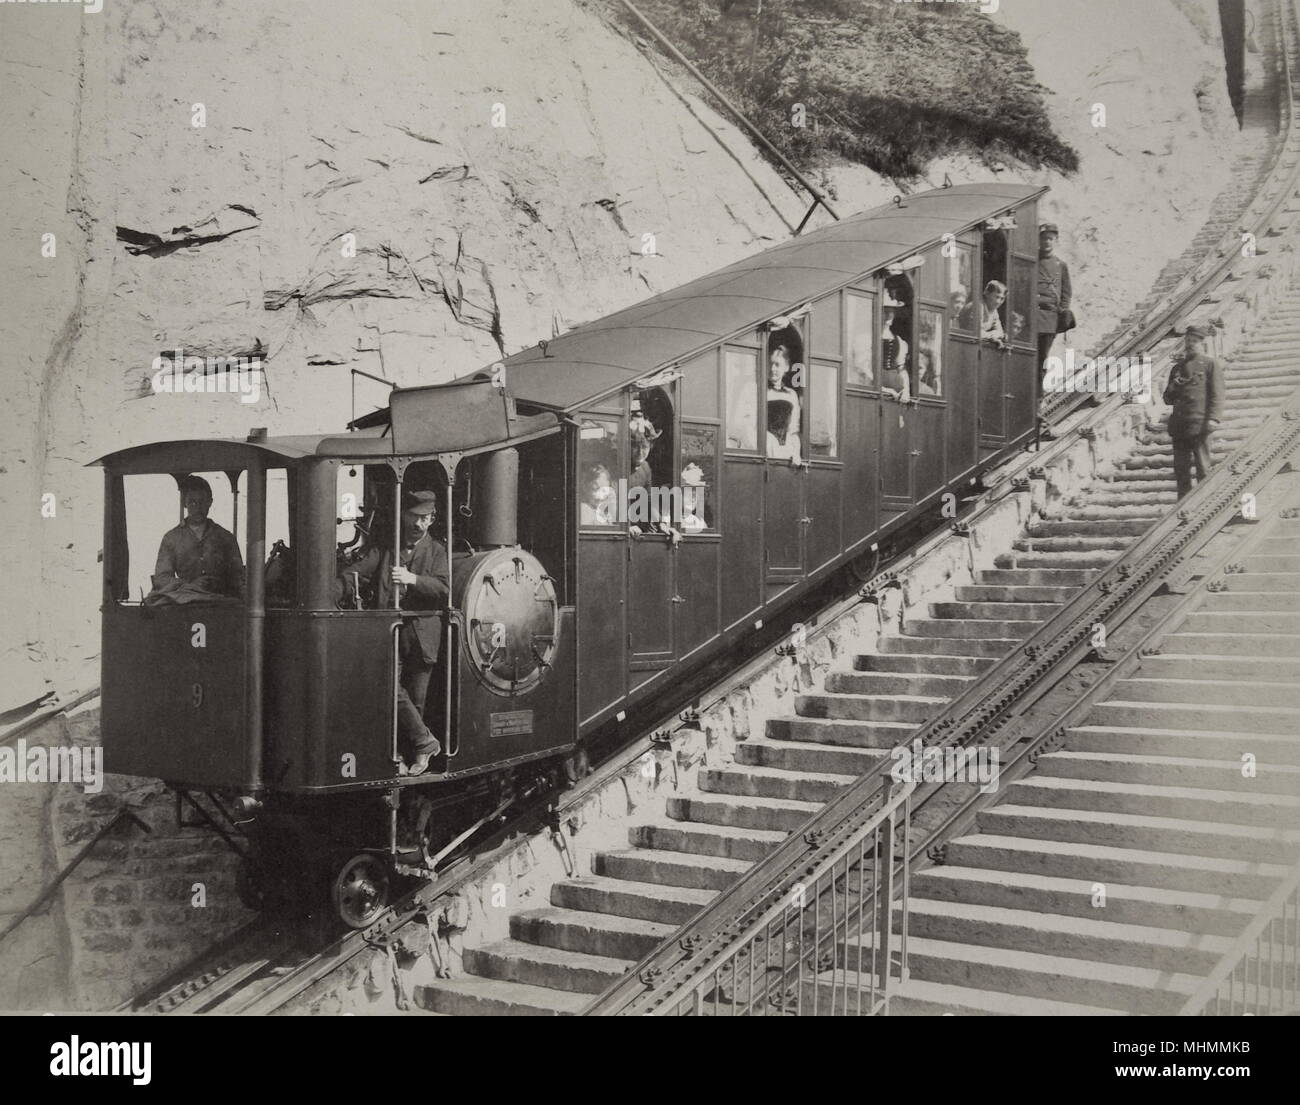 Un wagon de chemin de fer suisse à crémaillère et pignon à voie étroite, construit vers 1900, avec des conducteurs et des passagers, sur une piste en pente raide dans les Alpes, avec deux marches à côté. D'après les archives de Gloucester Coach and Wagon Works au Gloucester Record Office. Banque D'Images